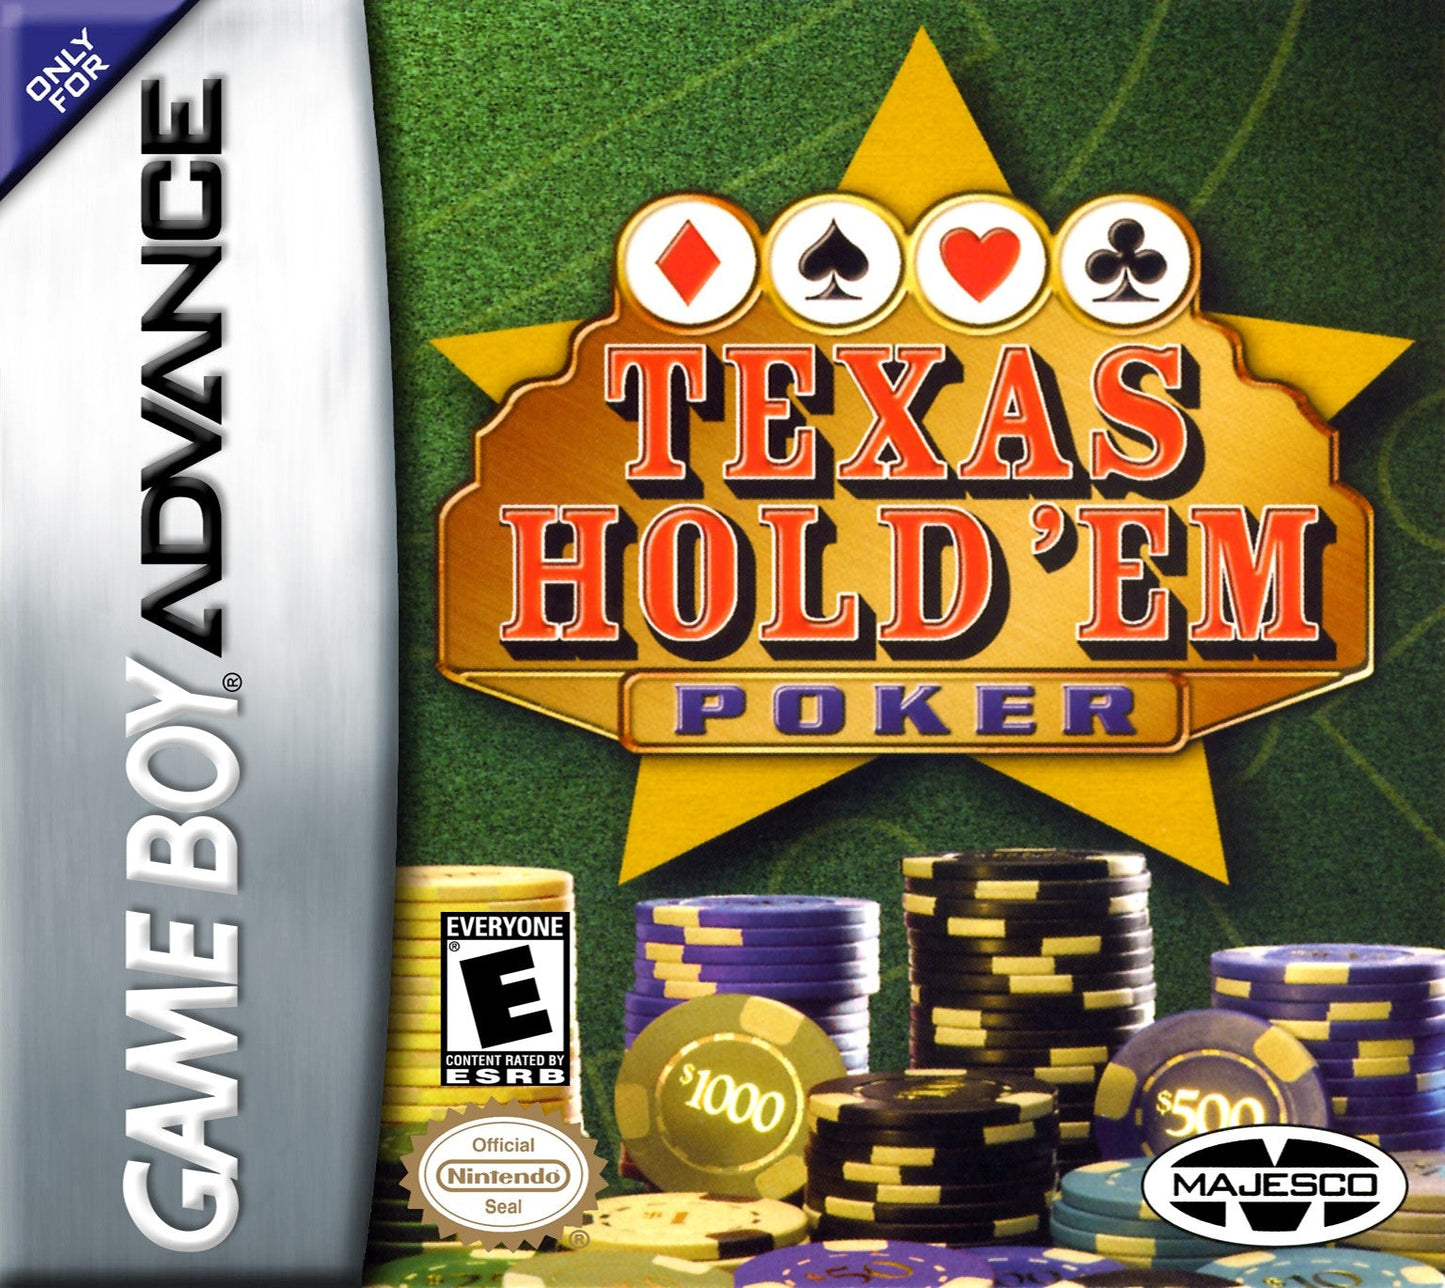 Texas Hold 'em Poker